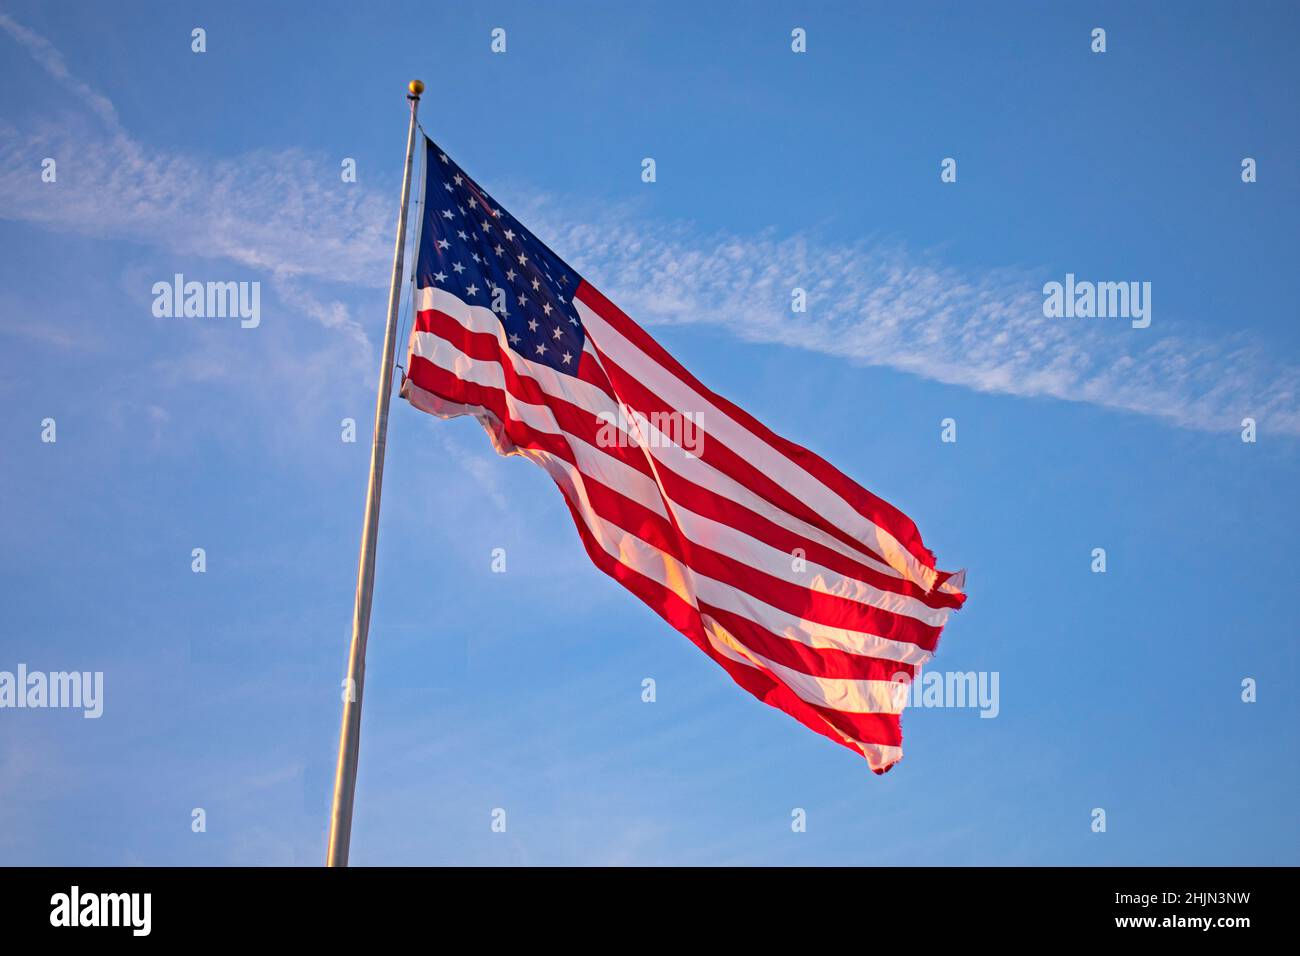 Drapeau américain unique, grand et isolé, volant haut sur un mât contre un ciel bleu clair Banque D'Images